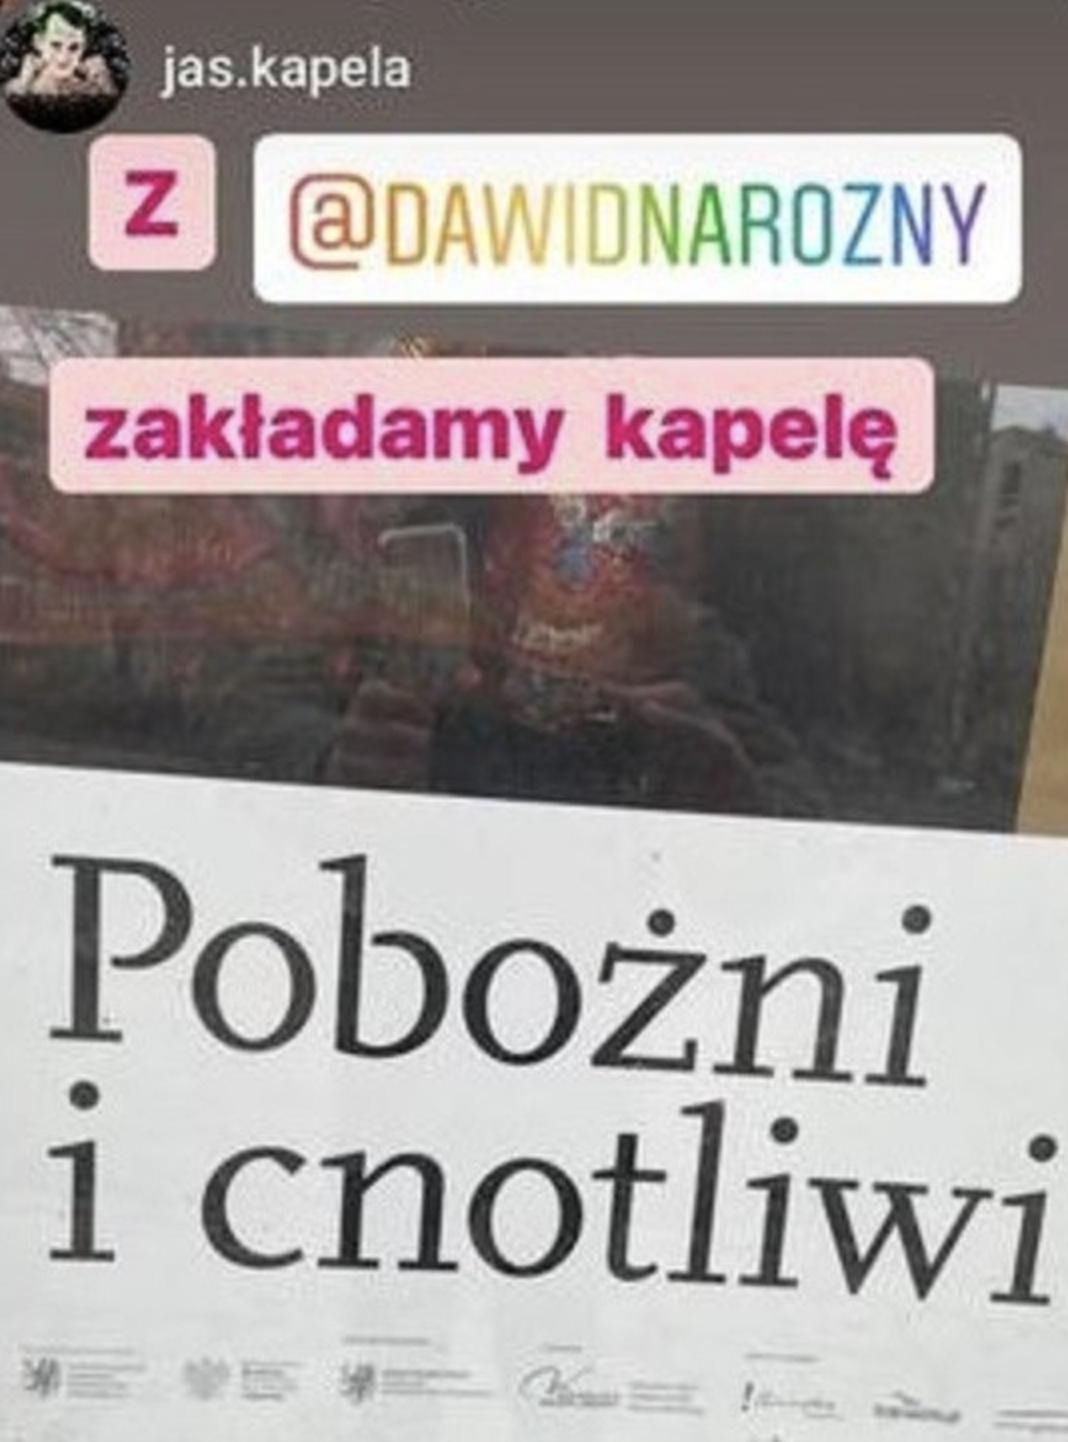 Dawid Narożny zakłada swoją kapelę | fot. Instagram.com/jas.kapela